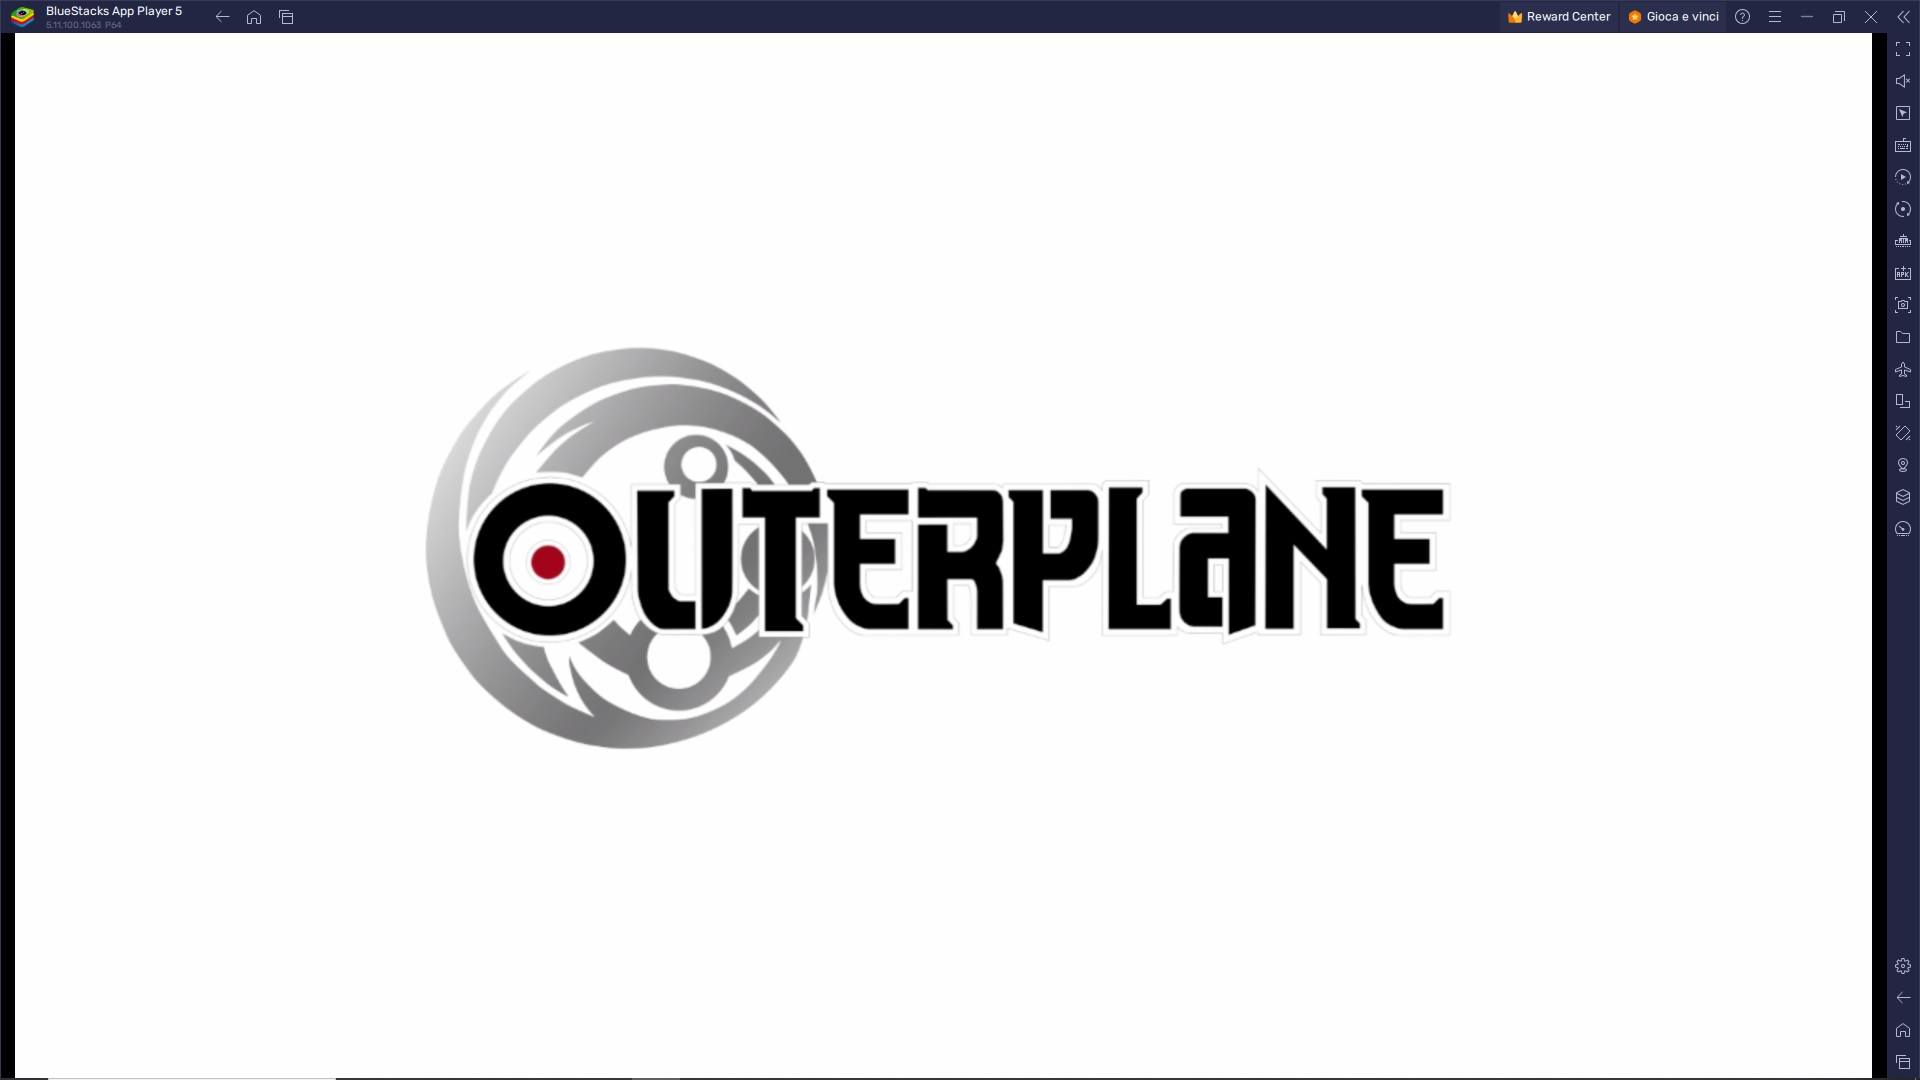 L’action anime Outerplane è disponibile globalmente su Android e iOS